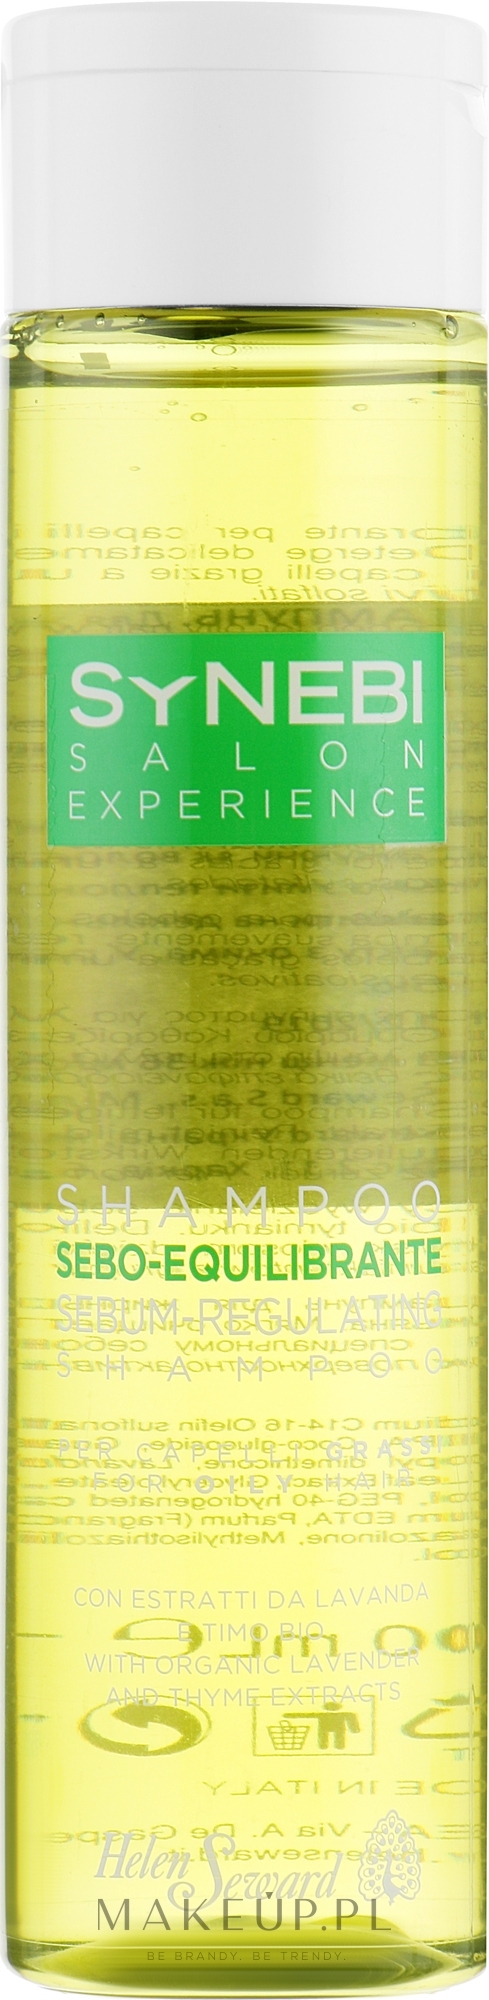 szampon helen seward do włosów przetłuszczających